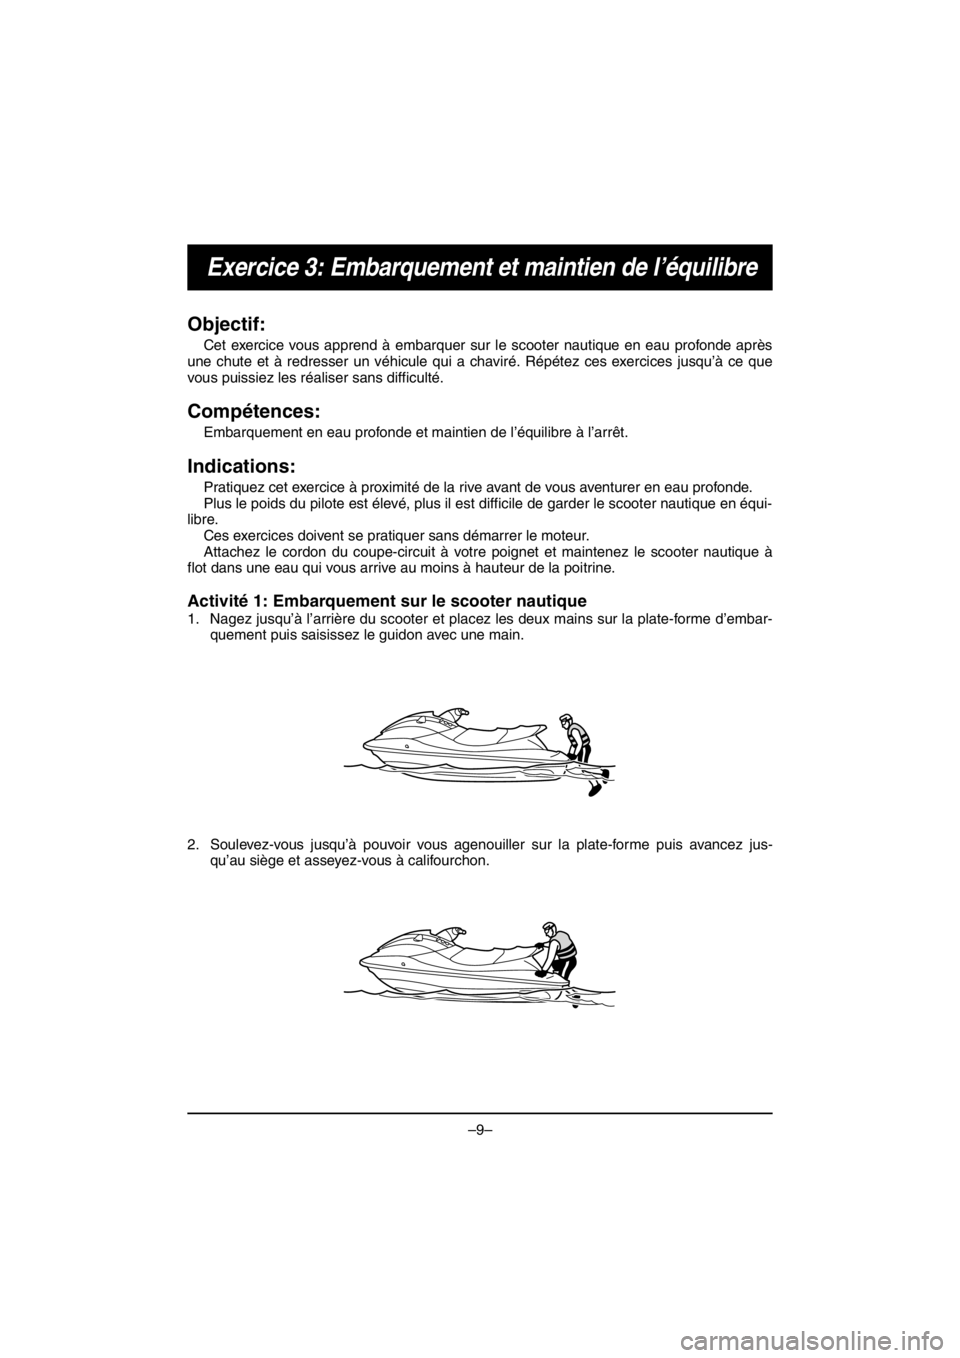 YAMAHA V1 2016  Manuale duso (in Italian) –9–
Exercice 3: Embarquement et maintien de l’équilibre
Objectif:
Cet exercice vous apprend à embarquer sur le scooter nautique en eau profonde après
une chute et à redresser un véhicule qu